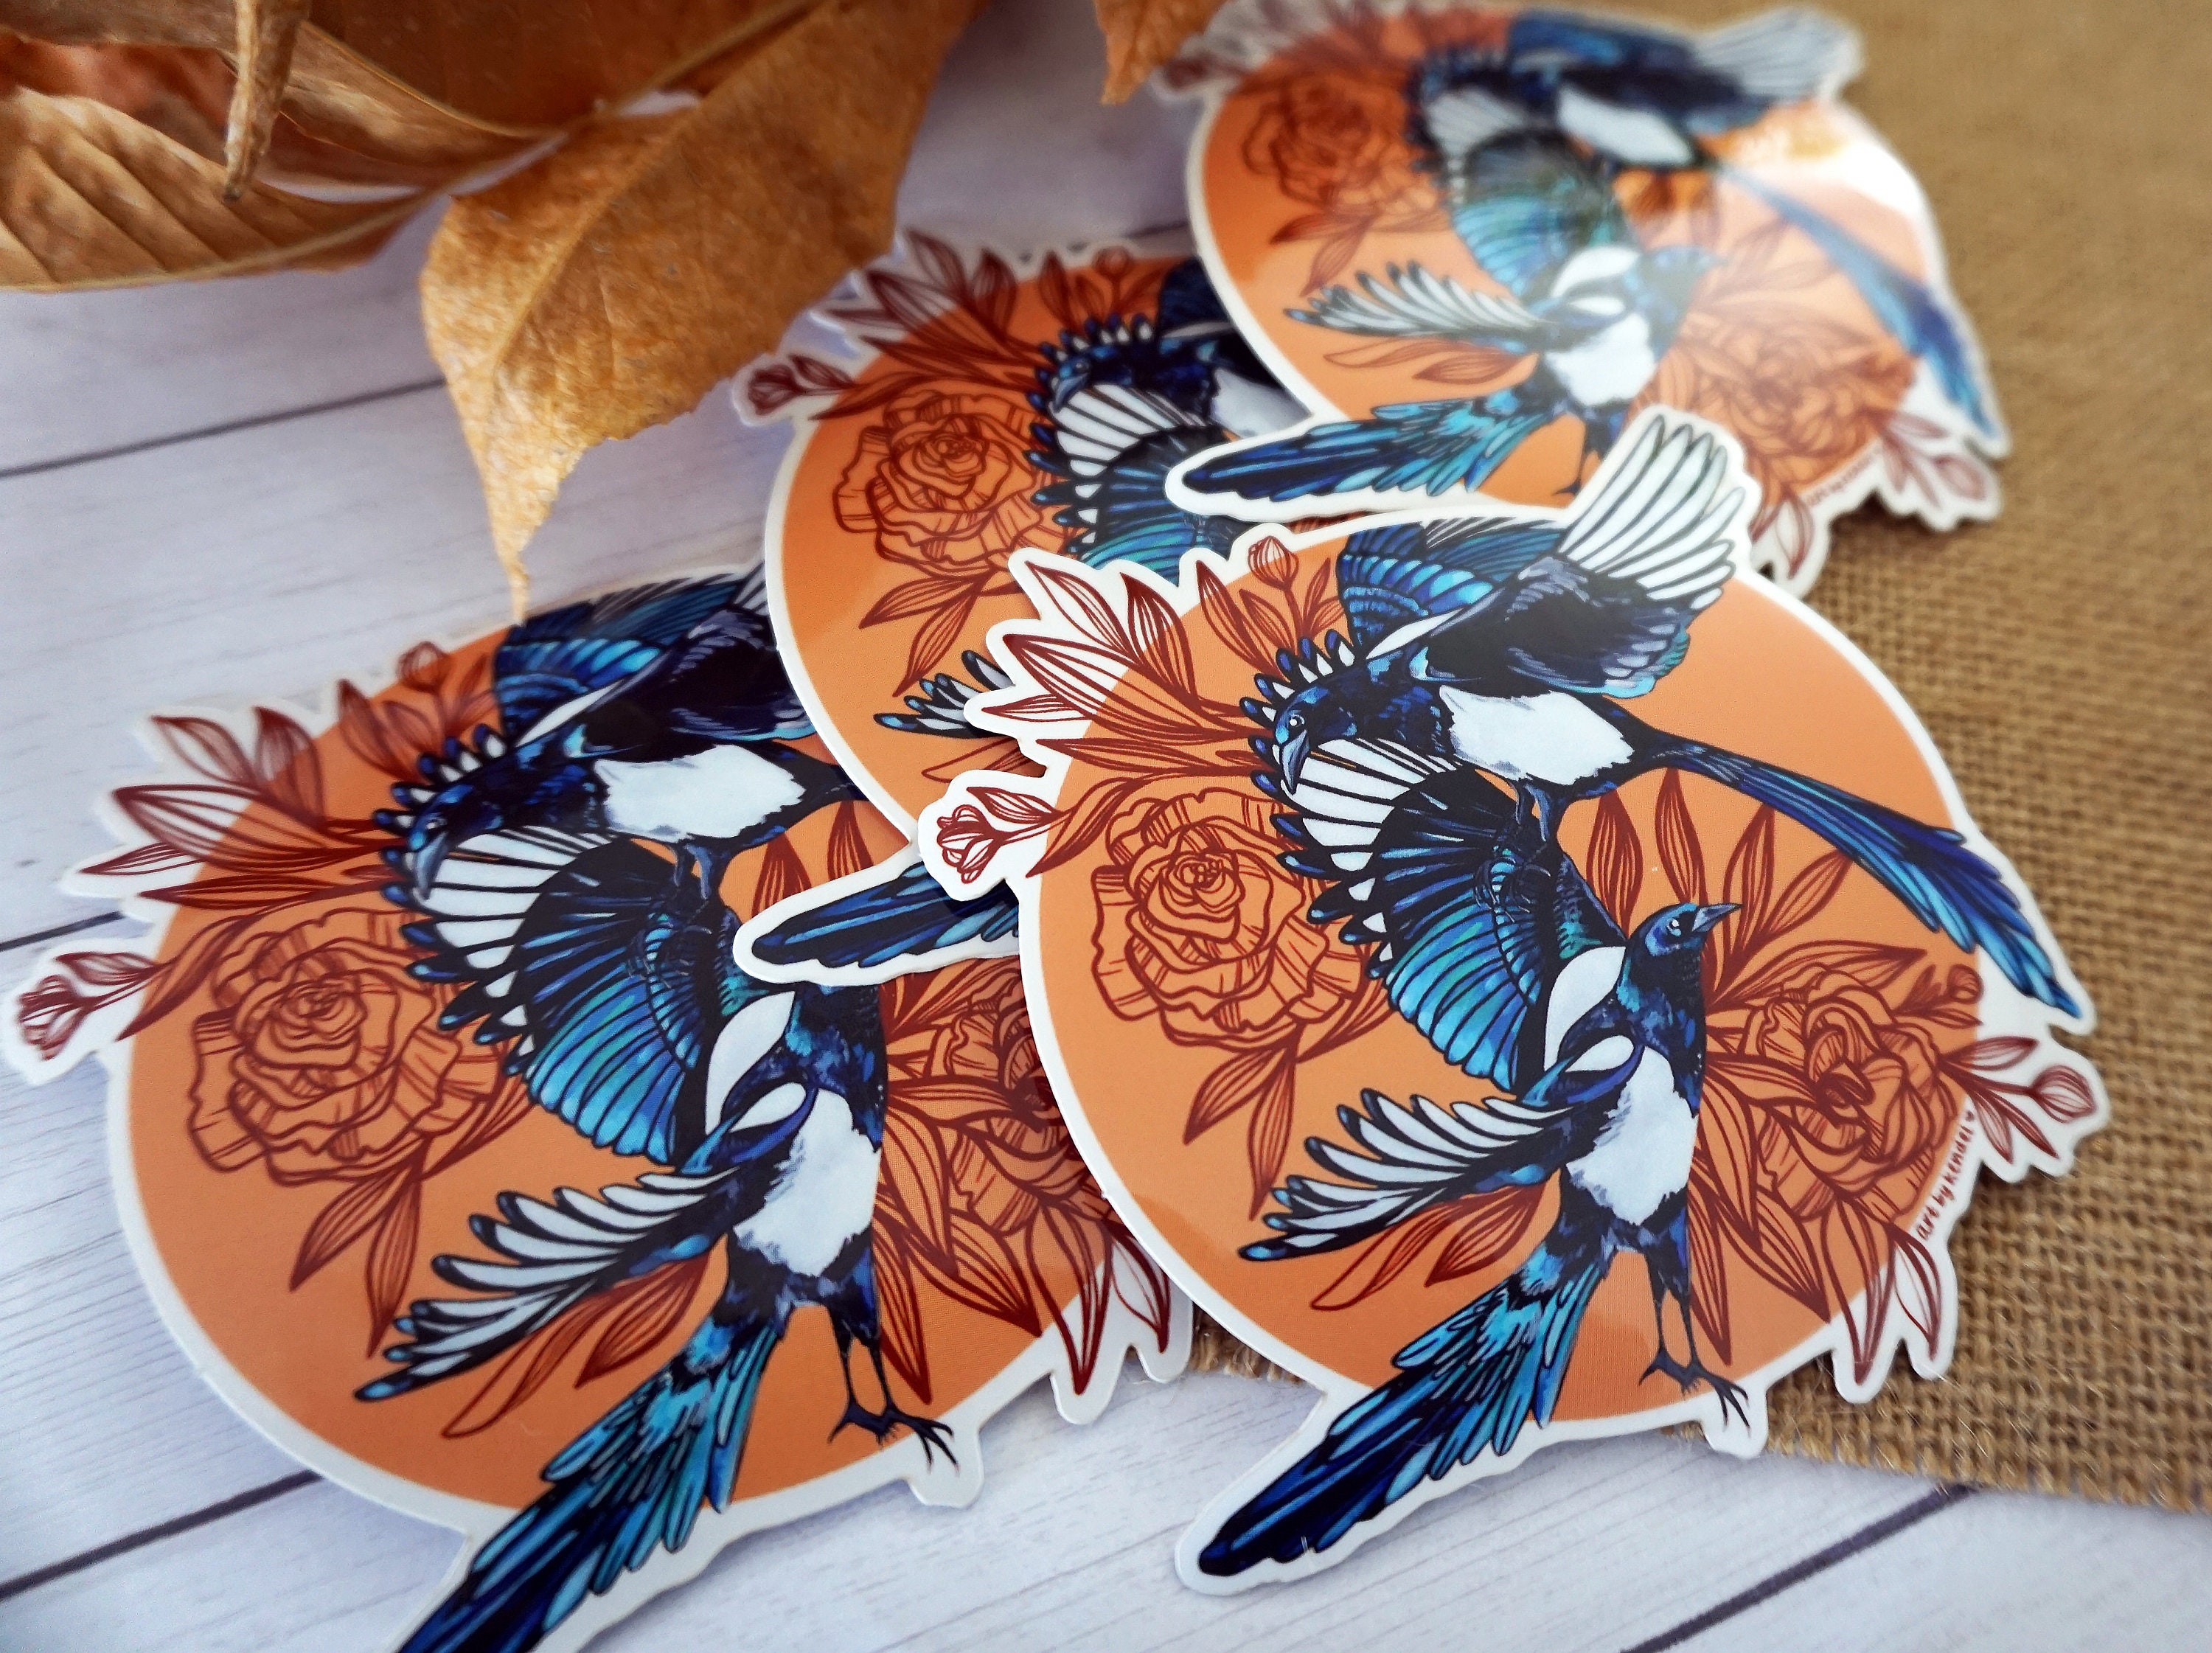 Magpie Bird Decal Sticker Choose Pattern Size #921 